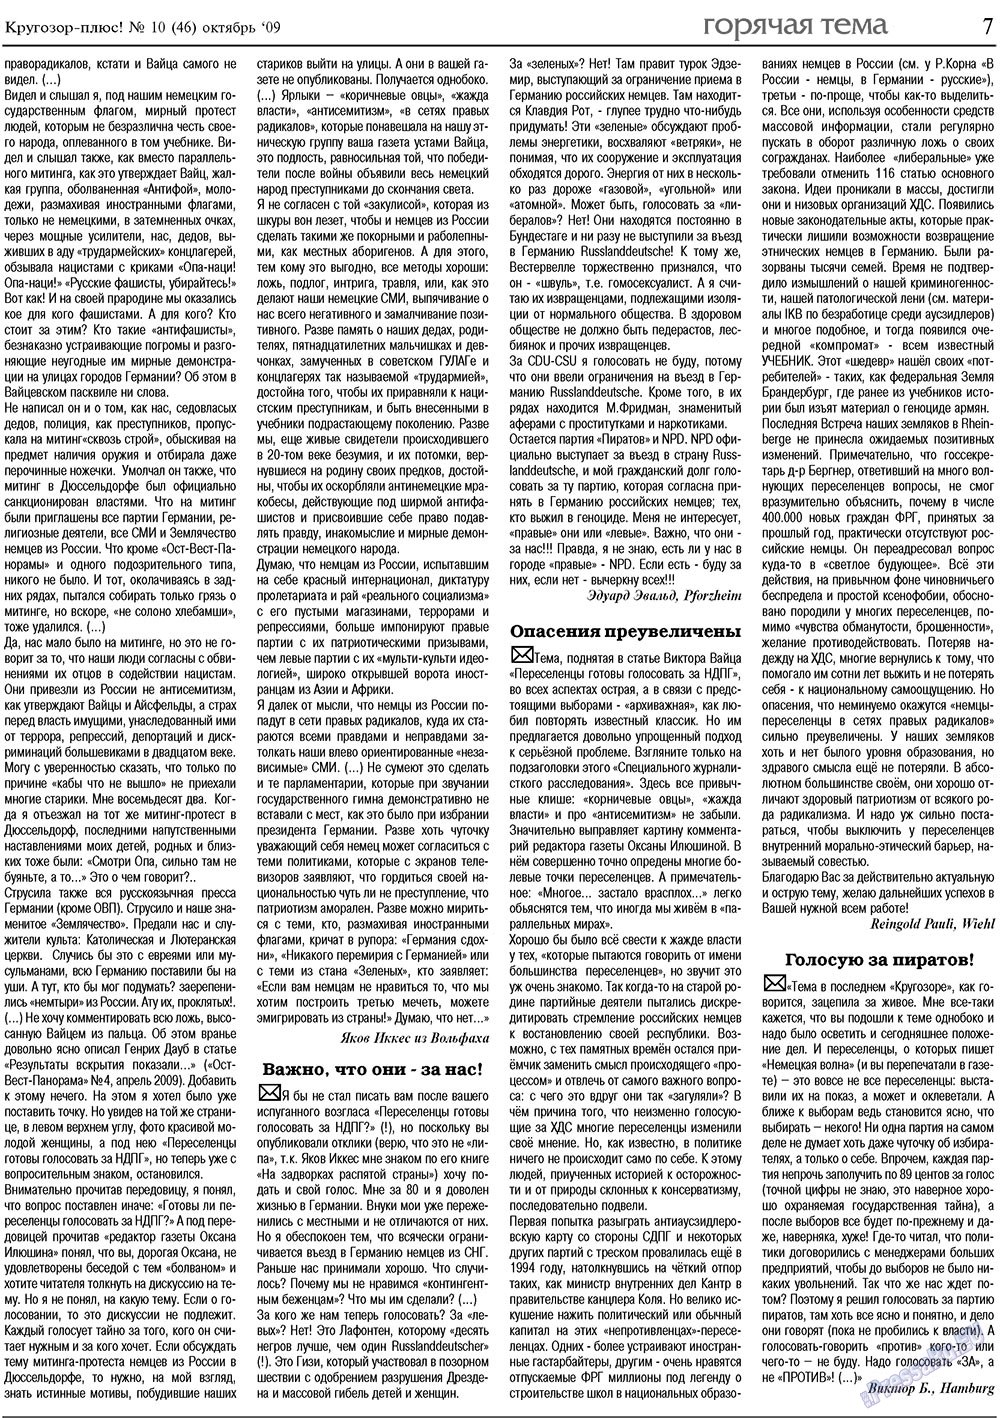 Кругозор плюс!, газета. 2009 №10 стр.7